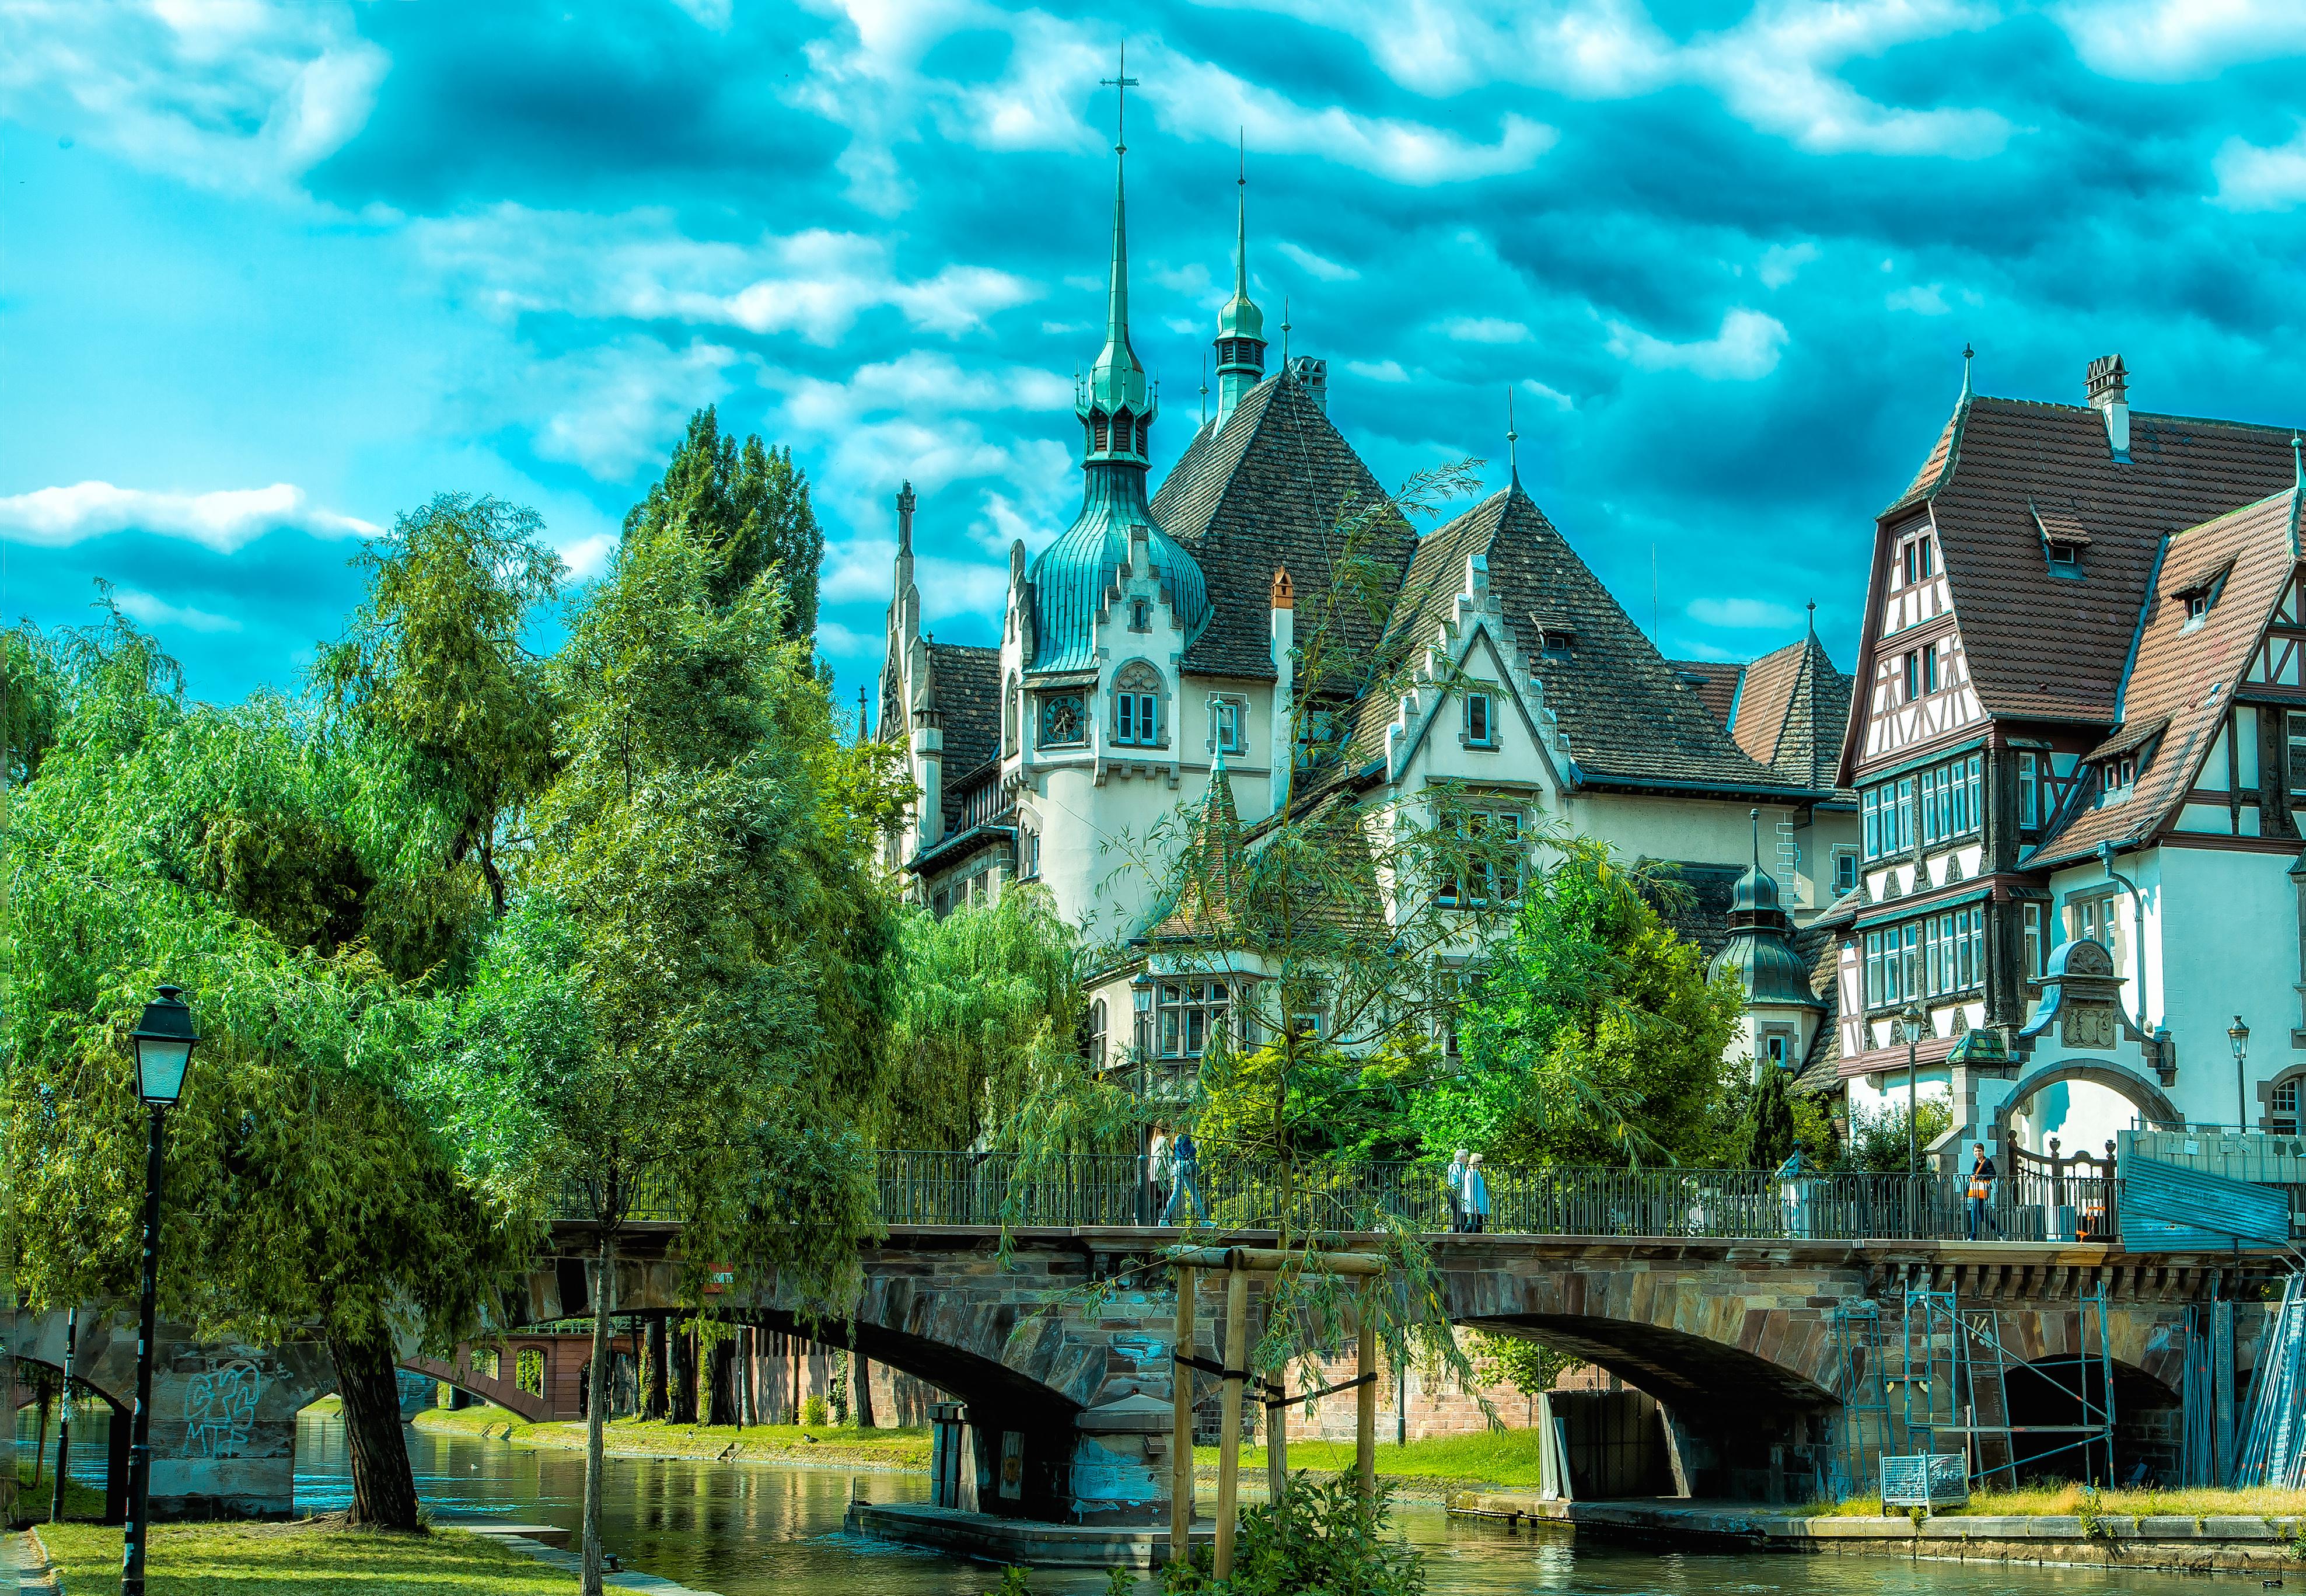 Strasbourg, France 4k Ultra HD Wallpaper. Background Image